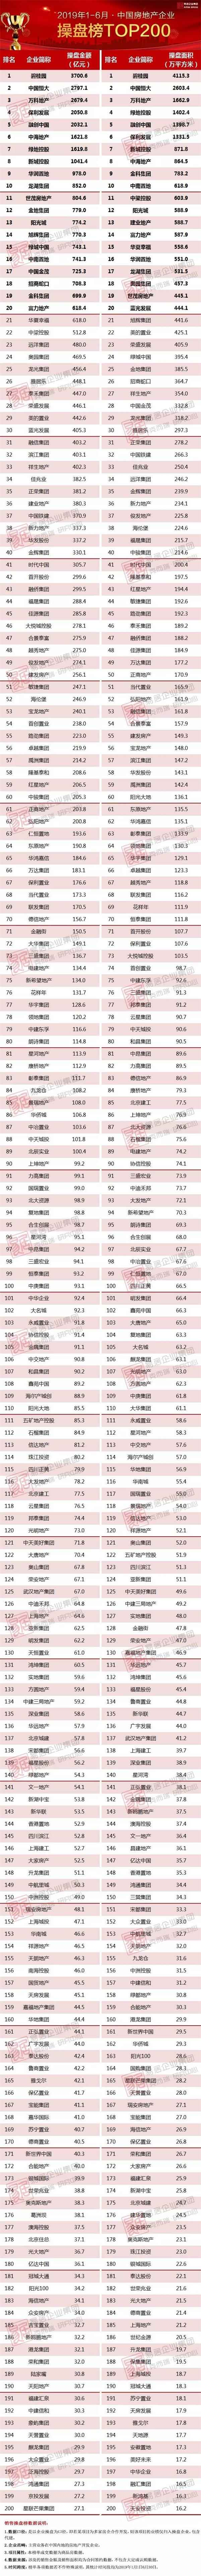 2019上半年中国房地产企业销售TOP200排行榜